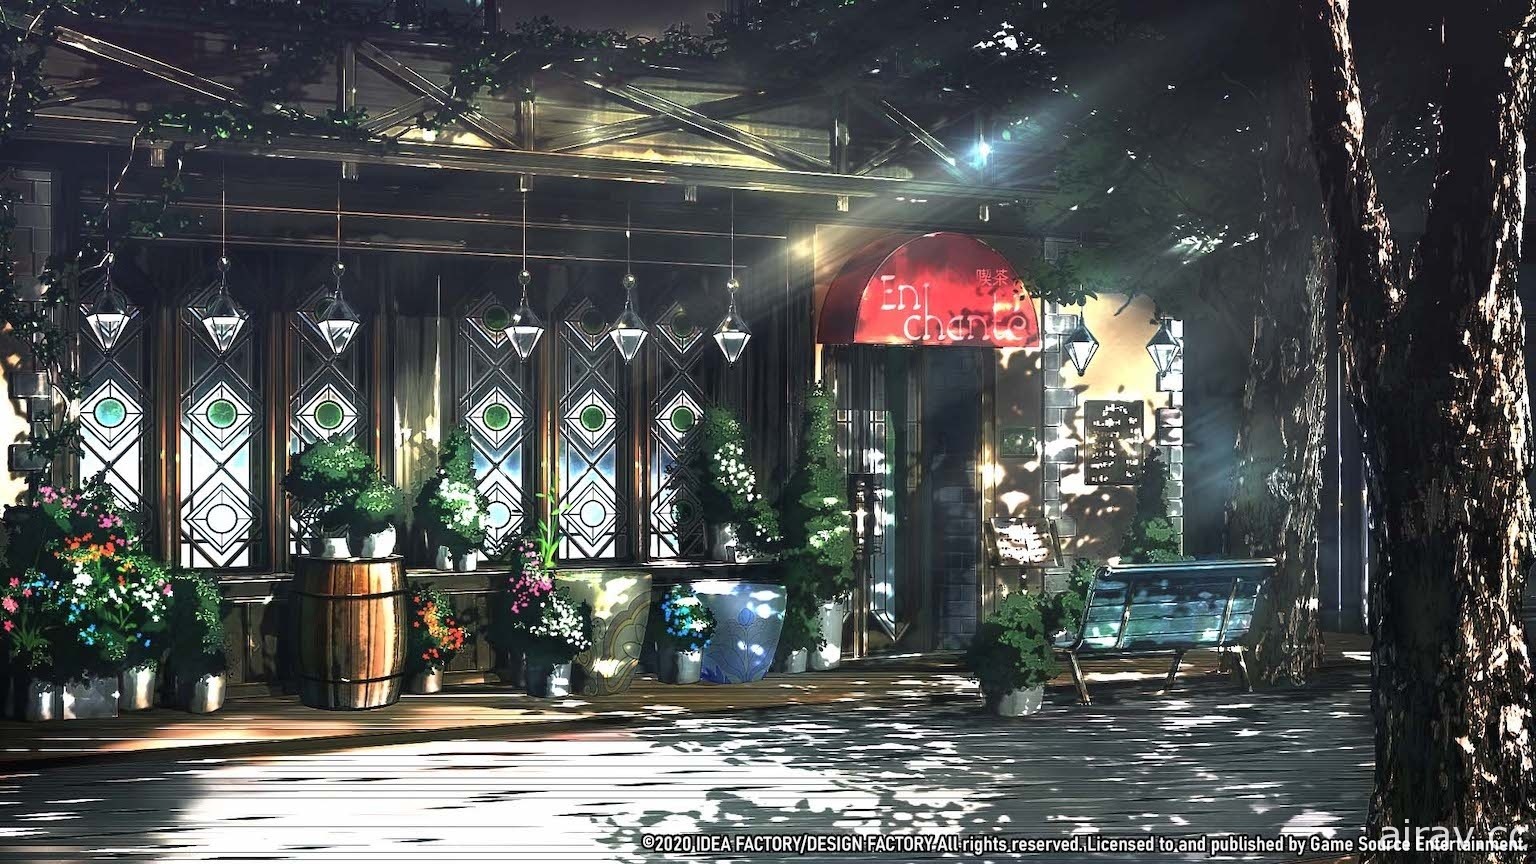 《幻奏咖啡廳 - Enchante-》中文版發售日確定 公開預購特典及限定版內容